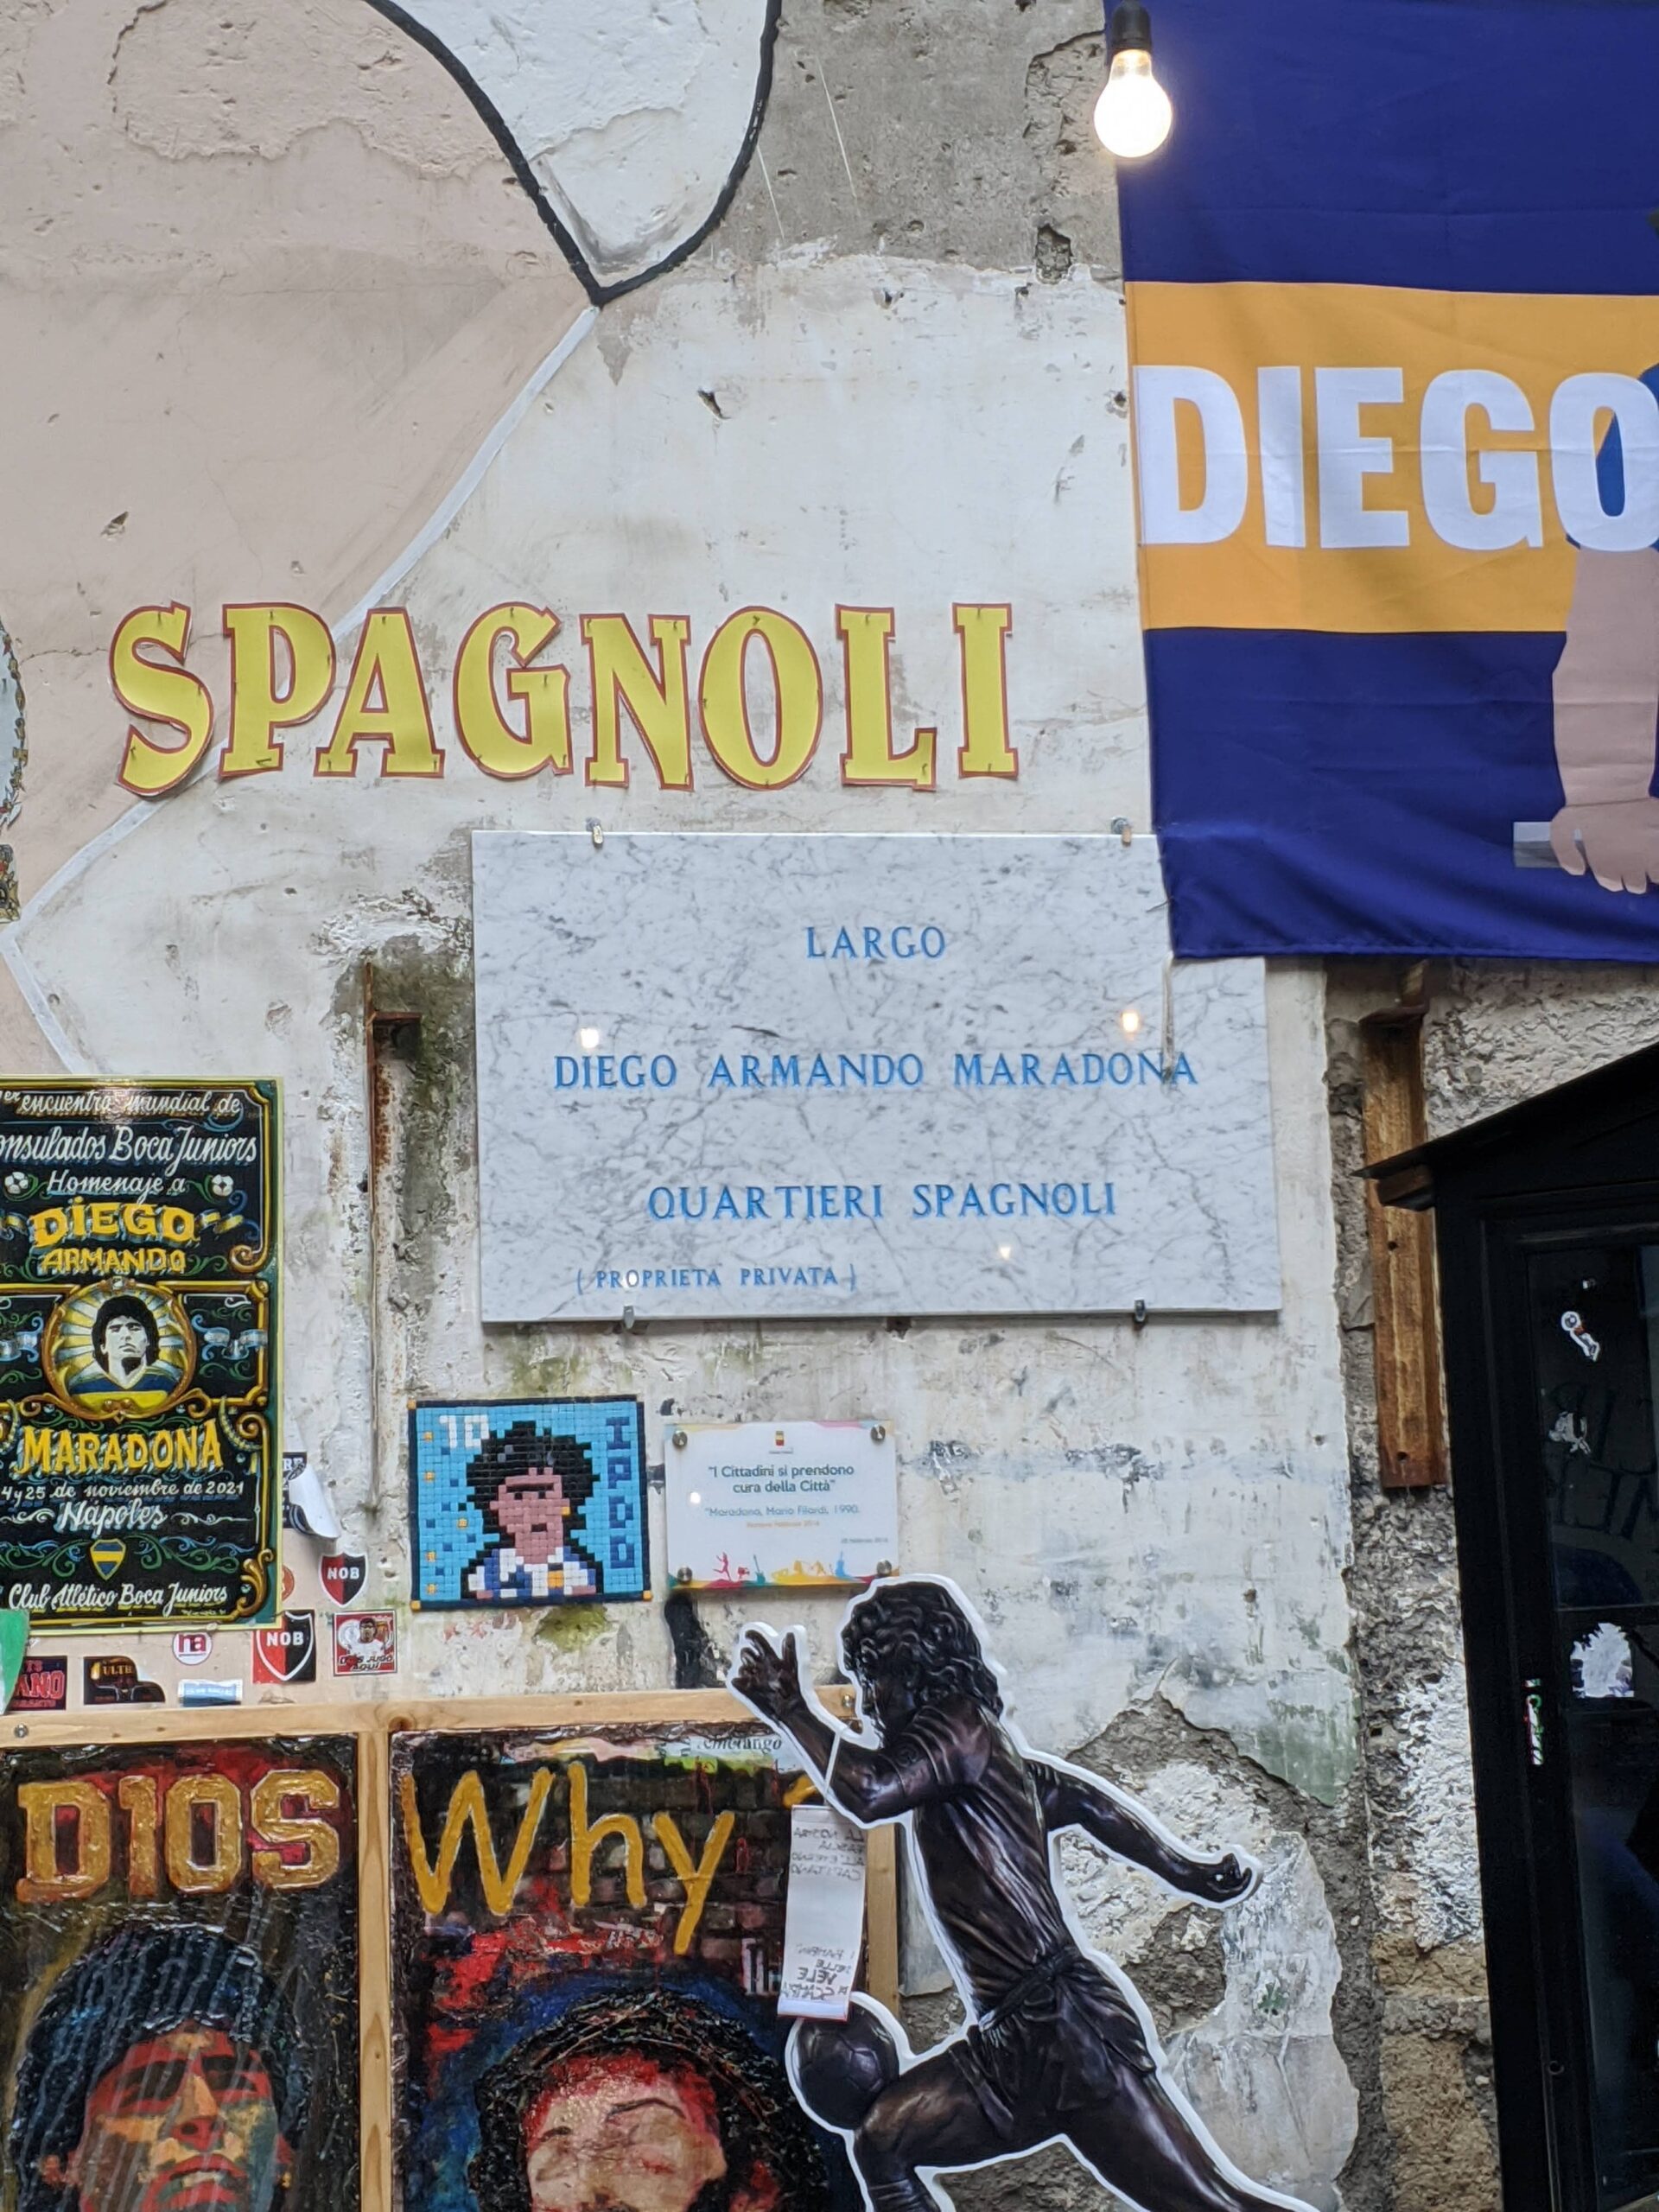 Foto de uma placa de mármore colada em um parede que diz: Largo Diego Maradona, Quartieri Spagnoli, local onde fica o "santuário" de Maradona em Nápoles.